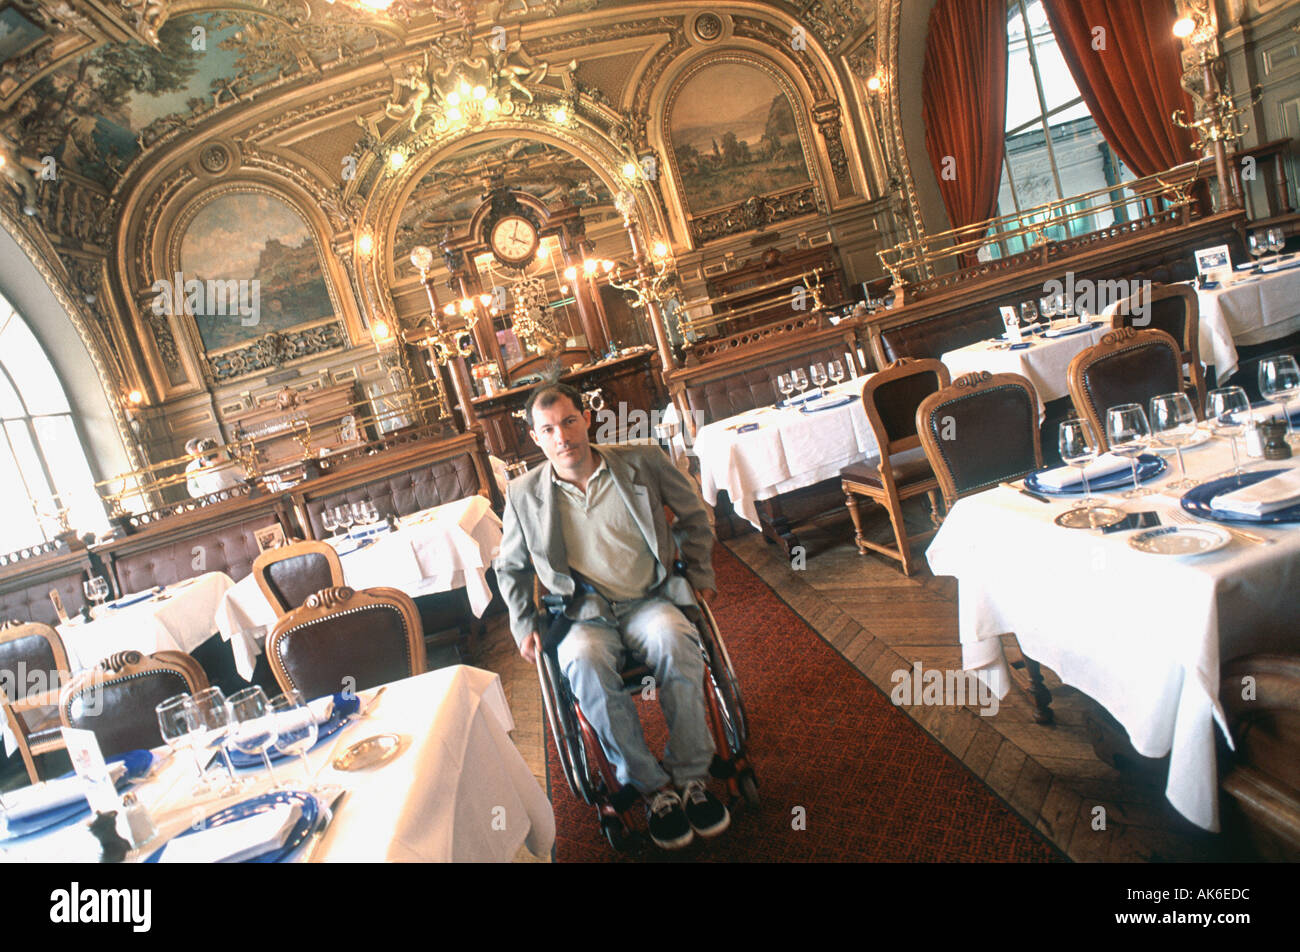 Disabili in vacanza al 'Ristorante Francese' 'le Train Bleu' in carrozzella Parigi Francia, vecchia Brasserie, accesso per esigenze speciali Foto Stock